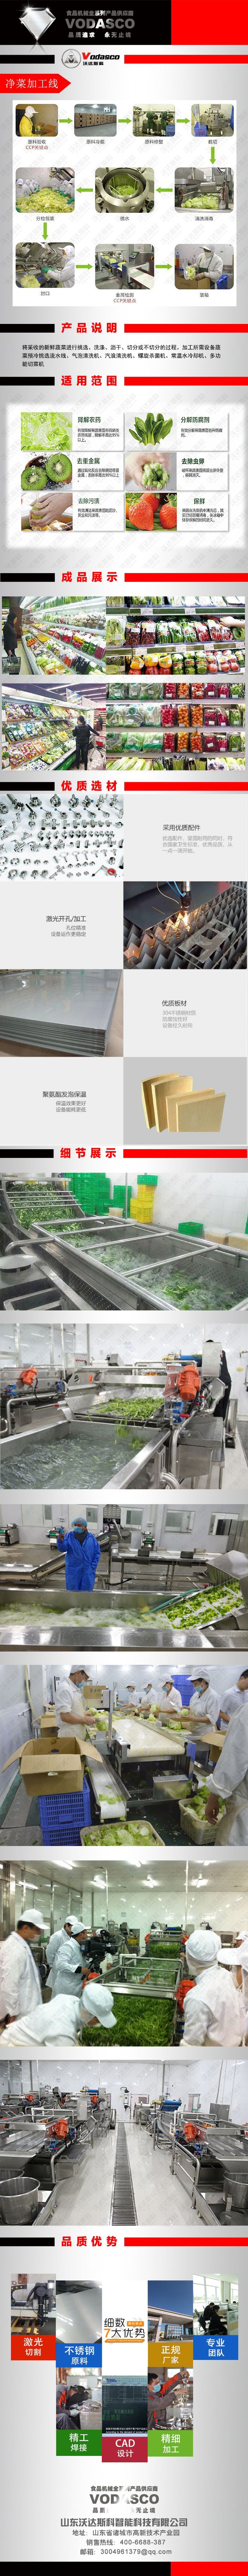 中央厨房净菜清洗机洗菜机 净菜加工生产线设备 果蔬加工生产线示例图1